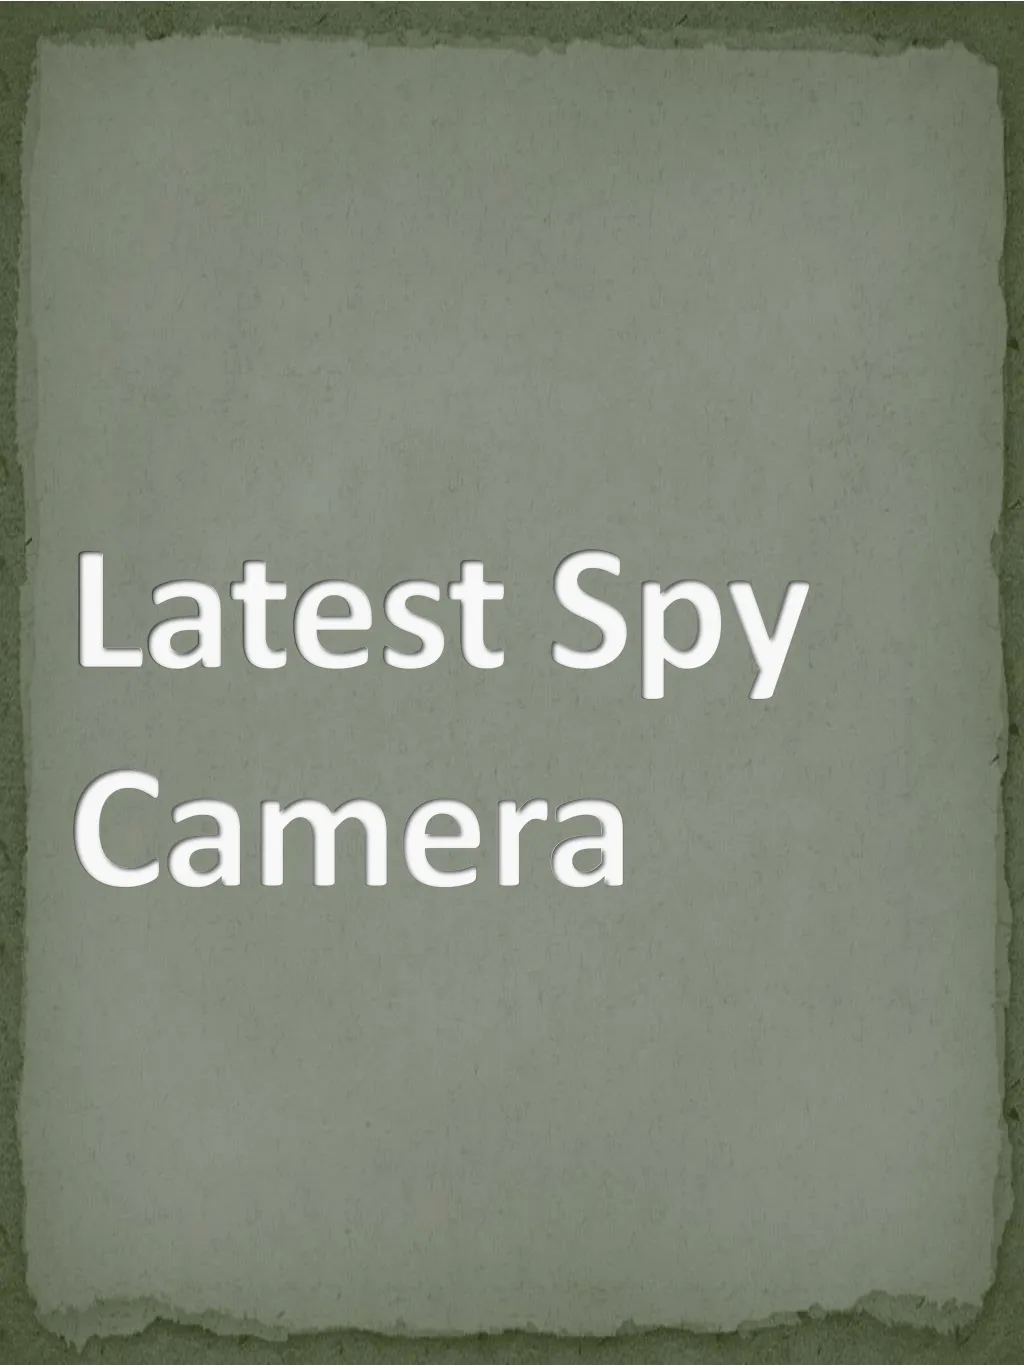 latest spy camera